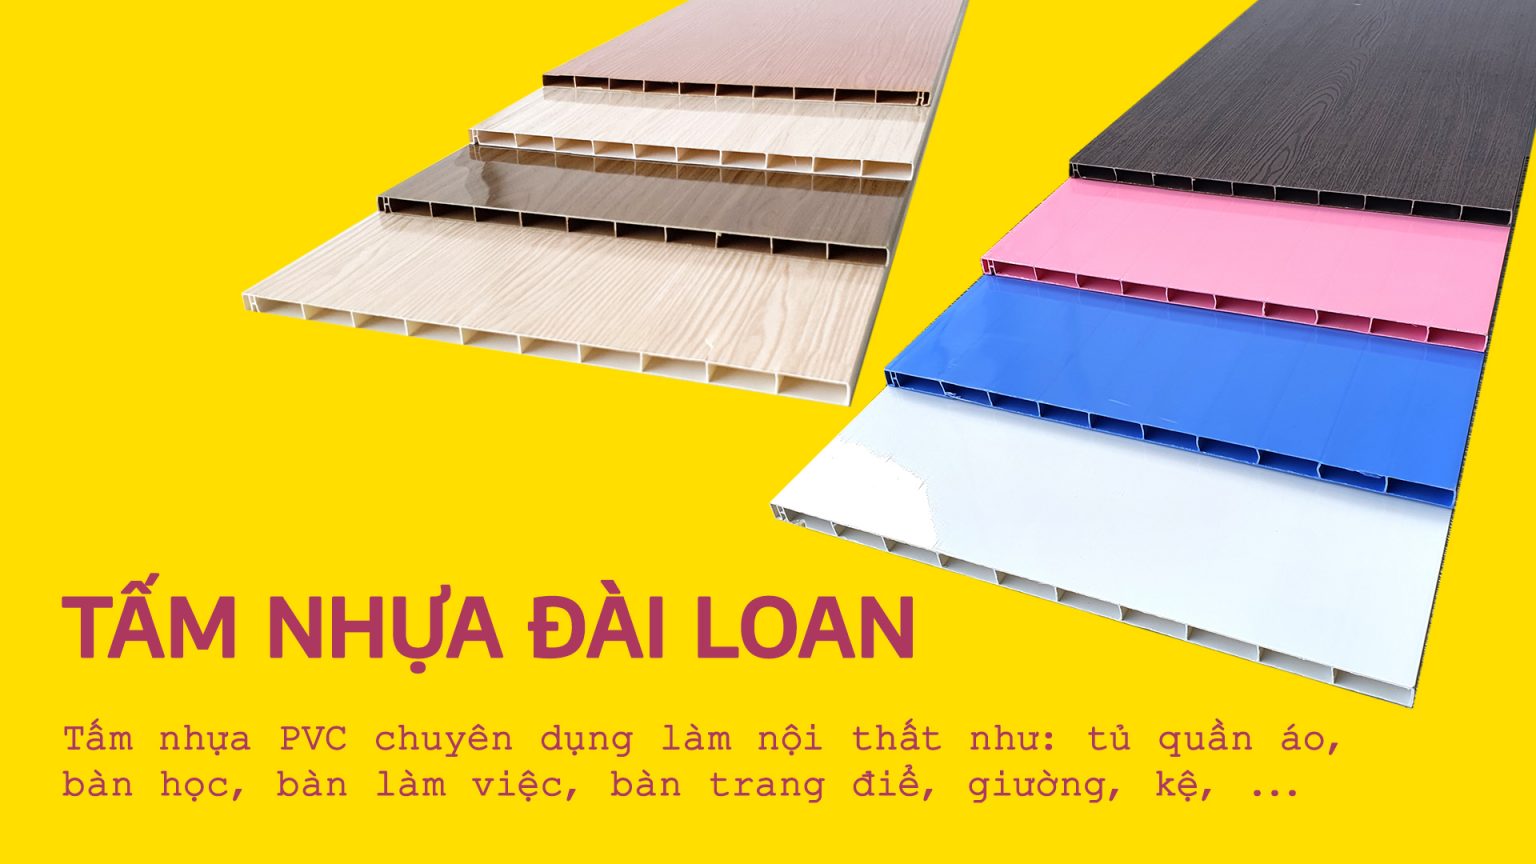 01-tam-nhua-dai-loan-banner-1536x864-359